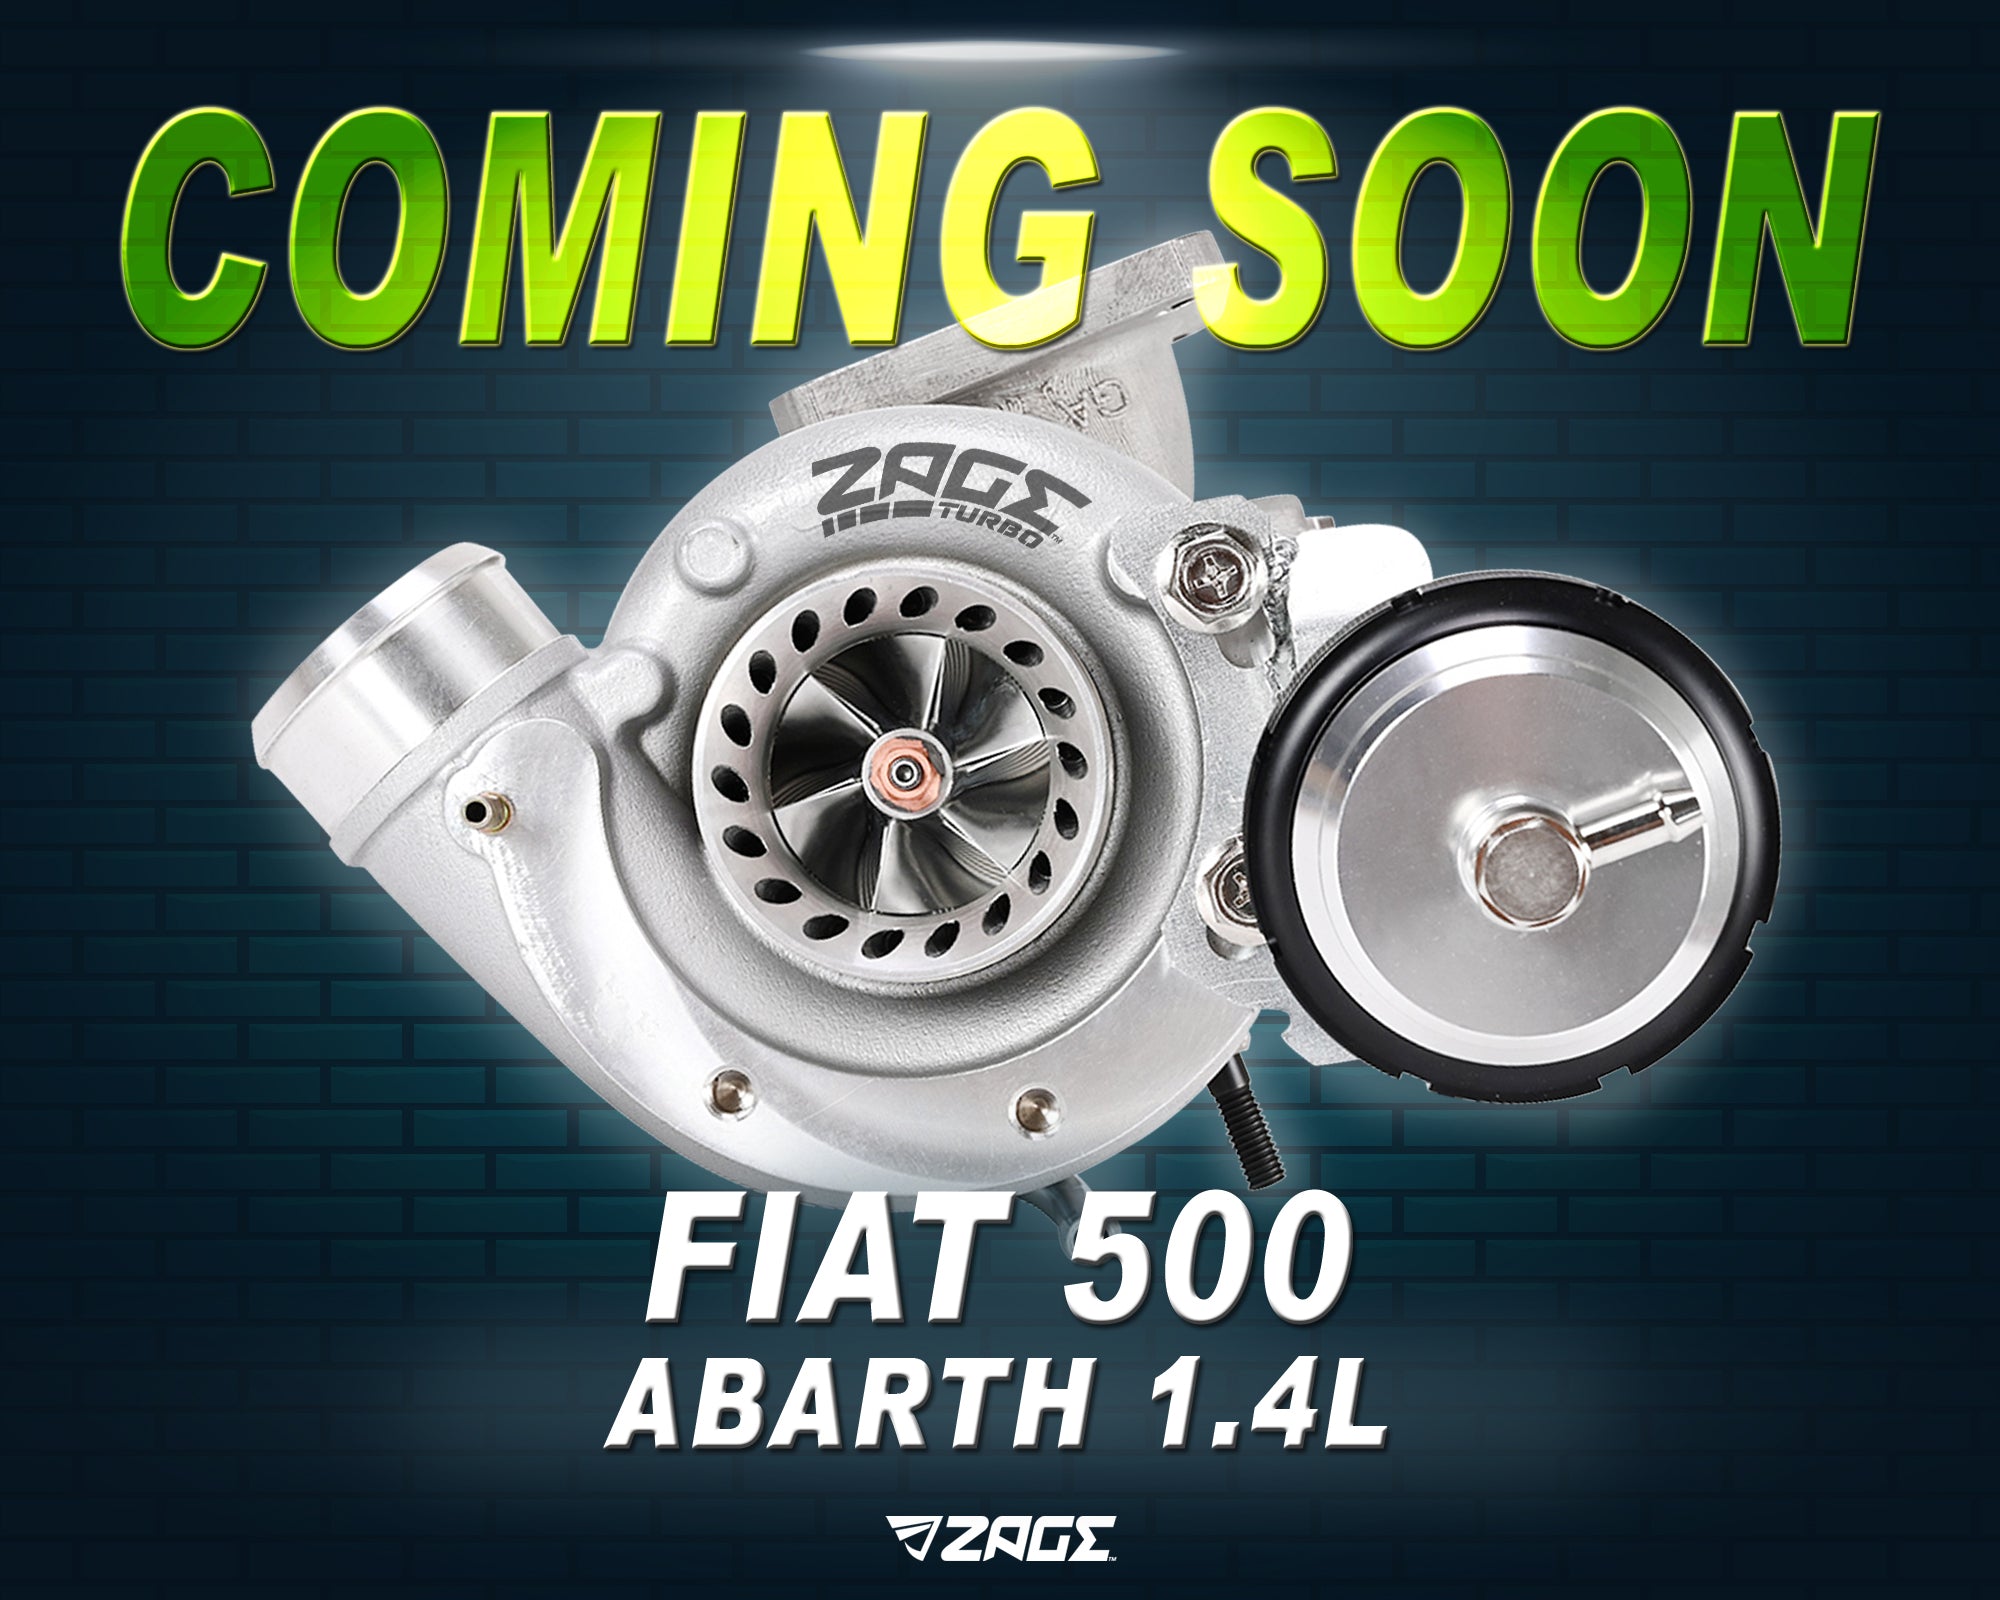 Fiat 500 Abarth 1.4L Turbo Kit on Sale